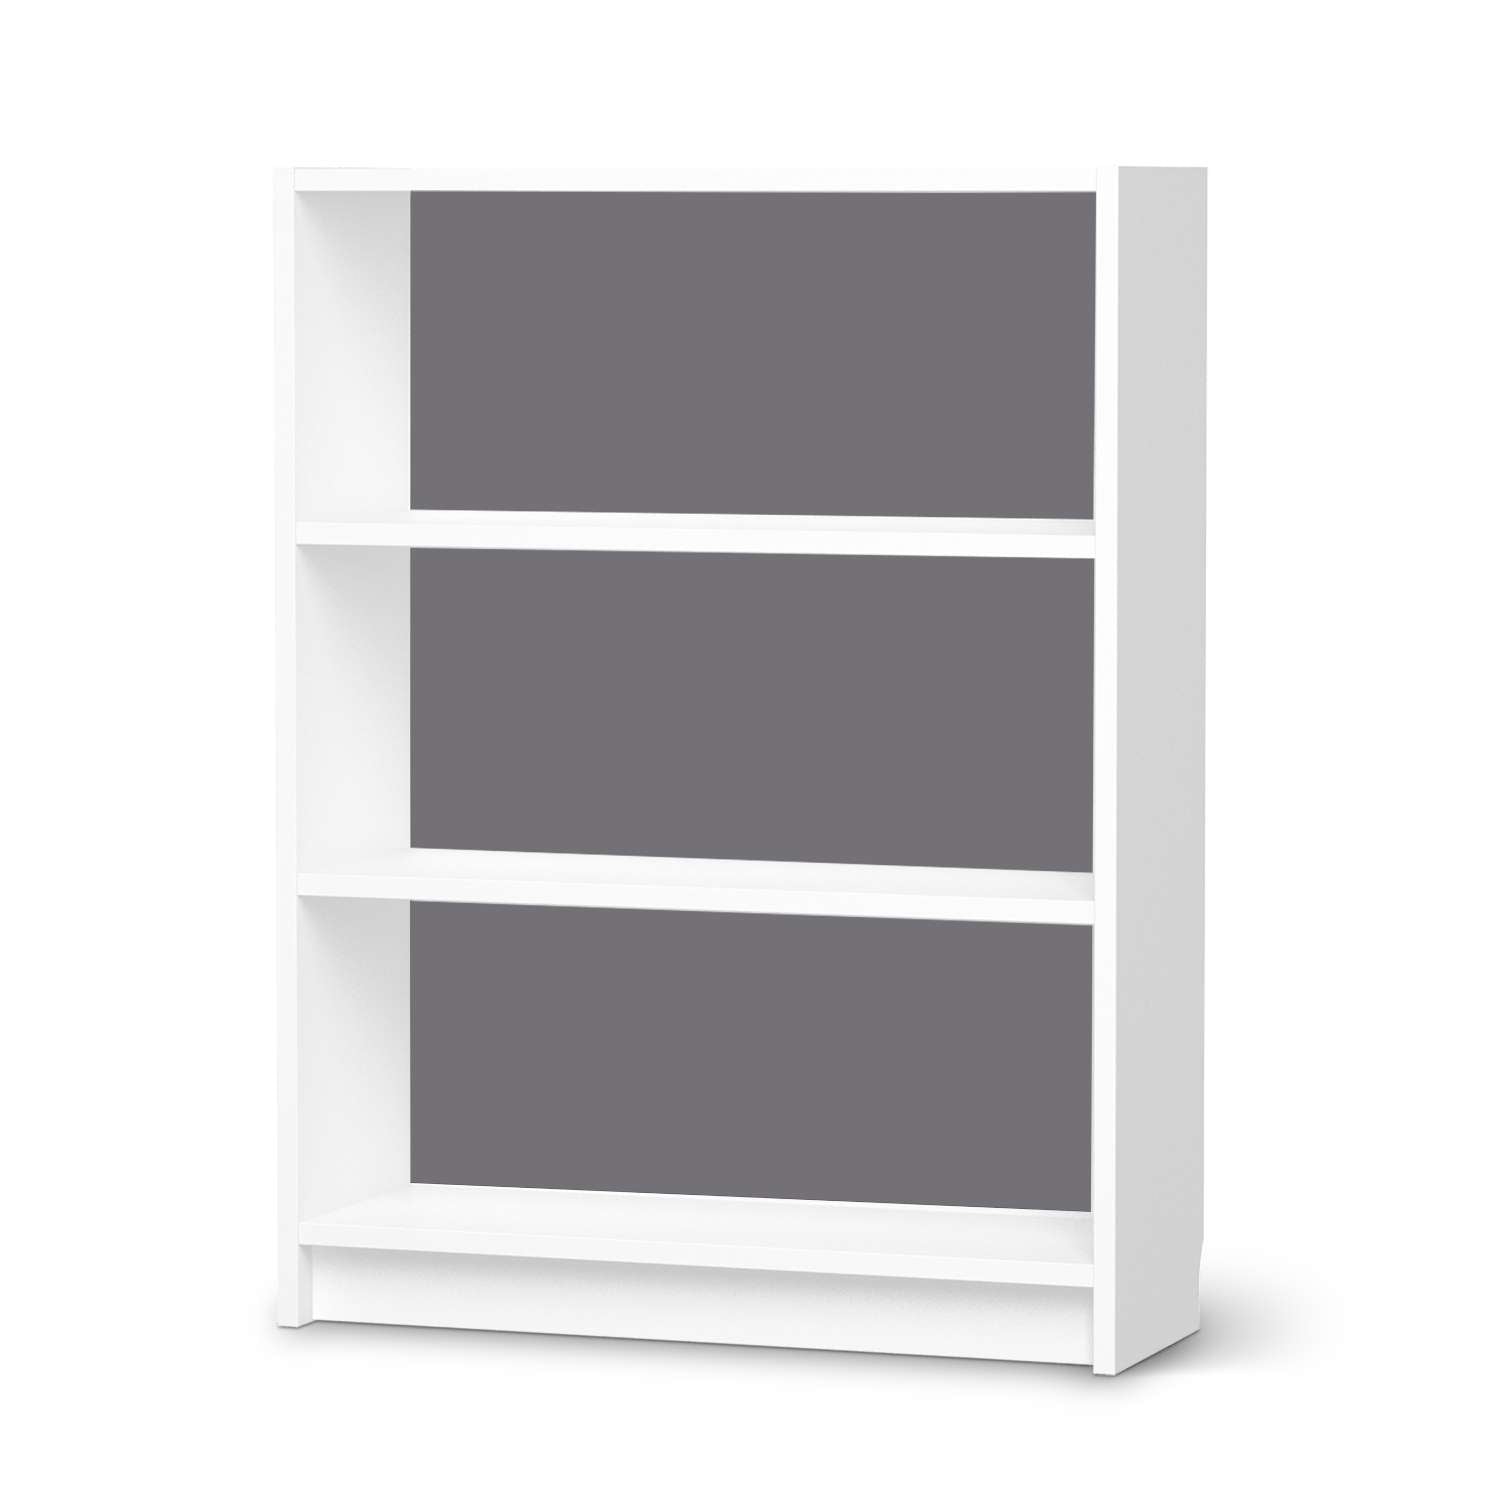 M?belfolie IKEA Billy Regal 3 F?cher - Design: Grau Light von creatisto